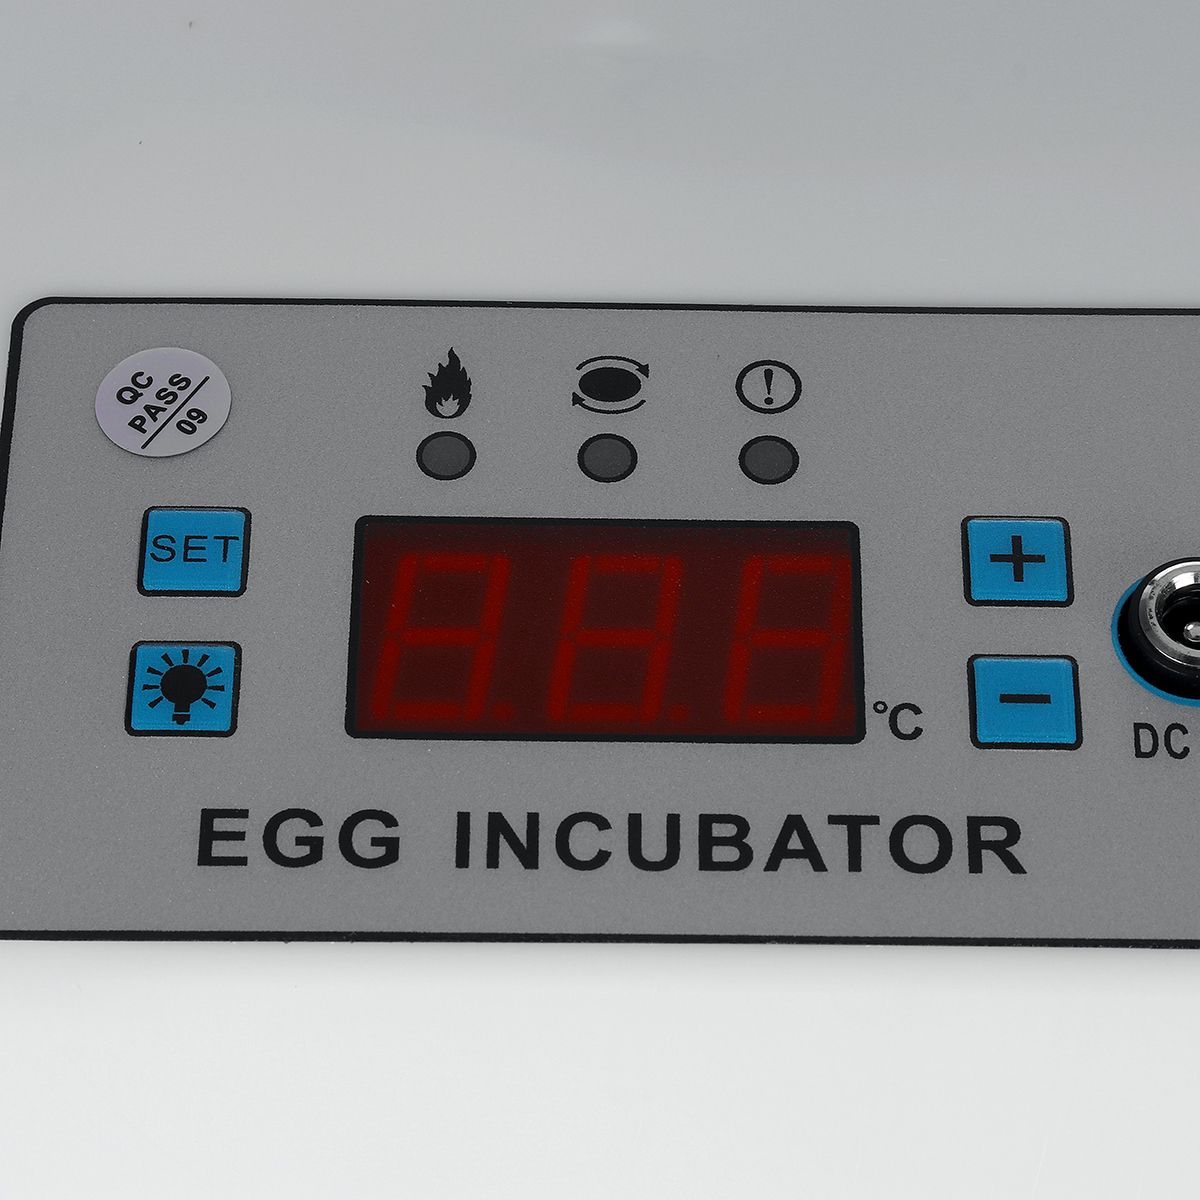 AC-110-220V-16-Eggs-Mini-Fully-Automatic-Incubators-Small-Egg-Hatcher-1754732